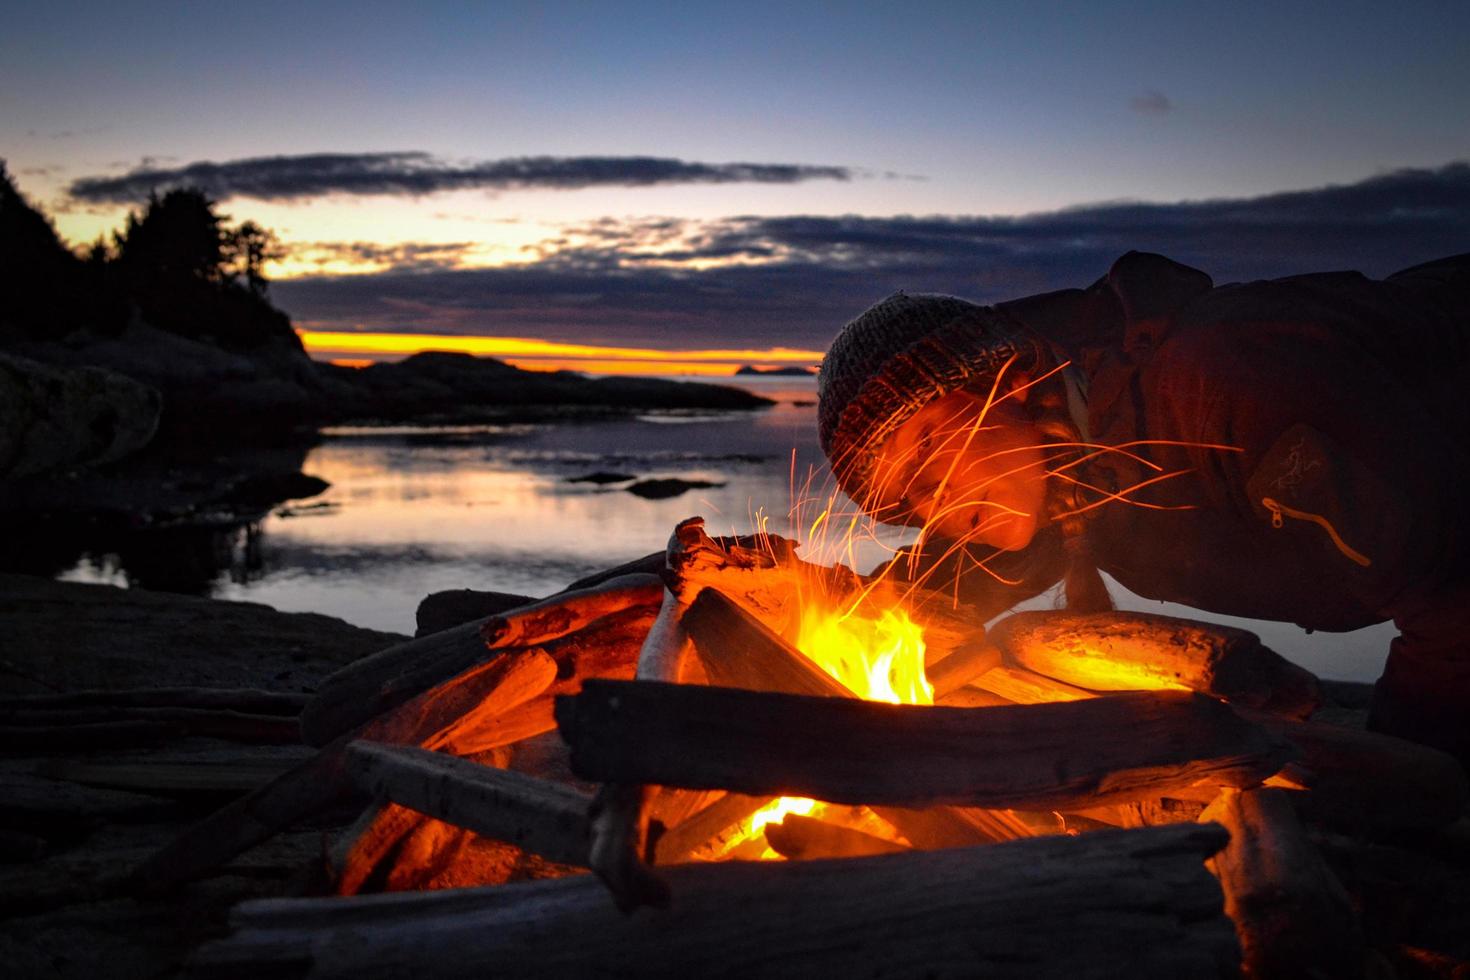 brand op bruin houten log tijdens zonsondergang foto